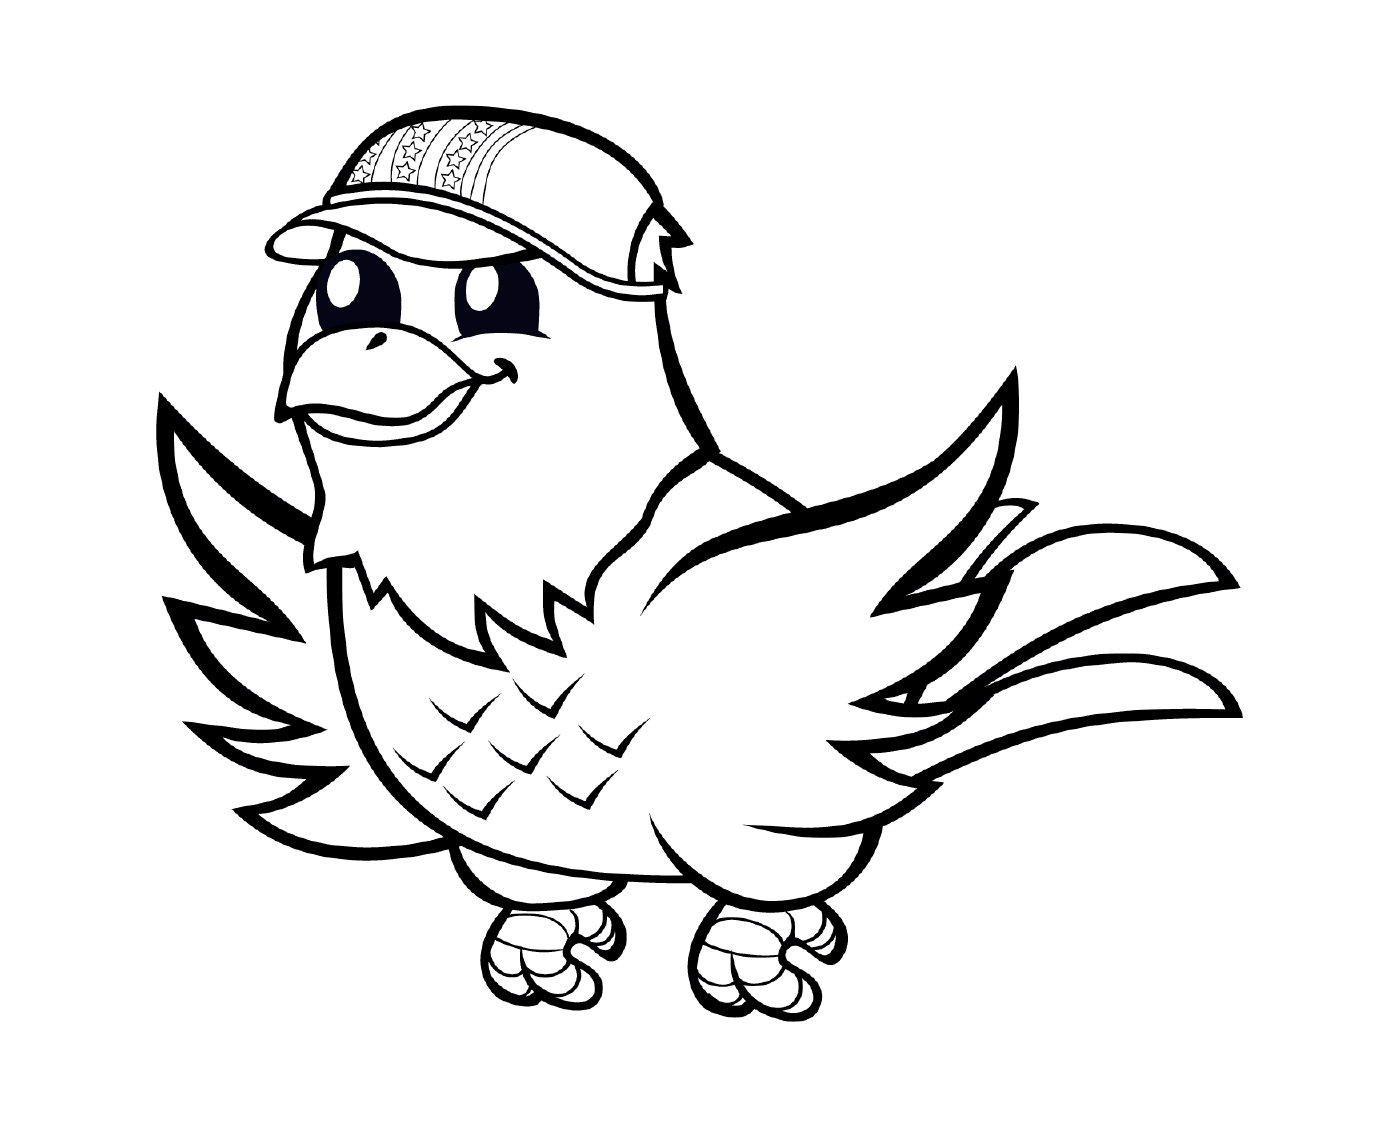   Un oiseau portant une casquette de baseball 